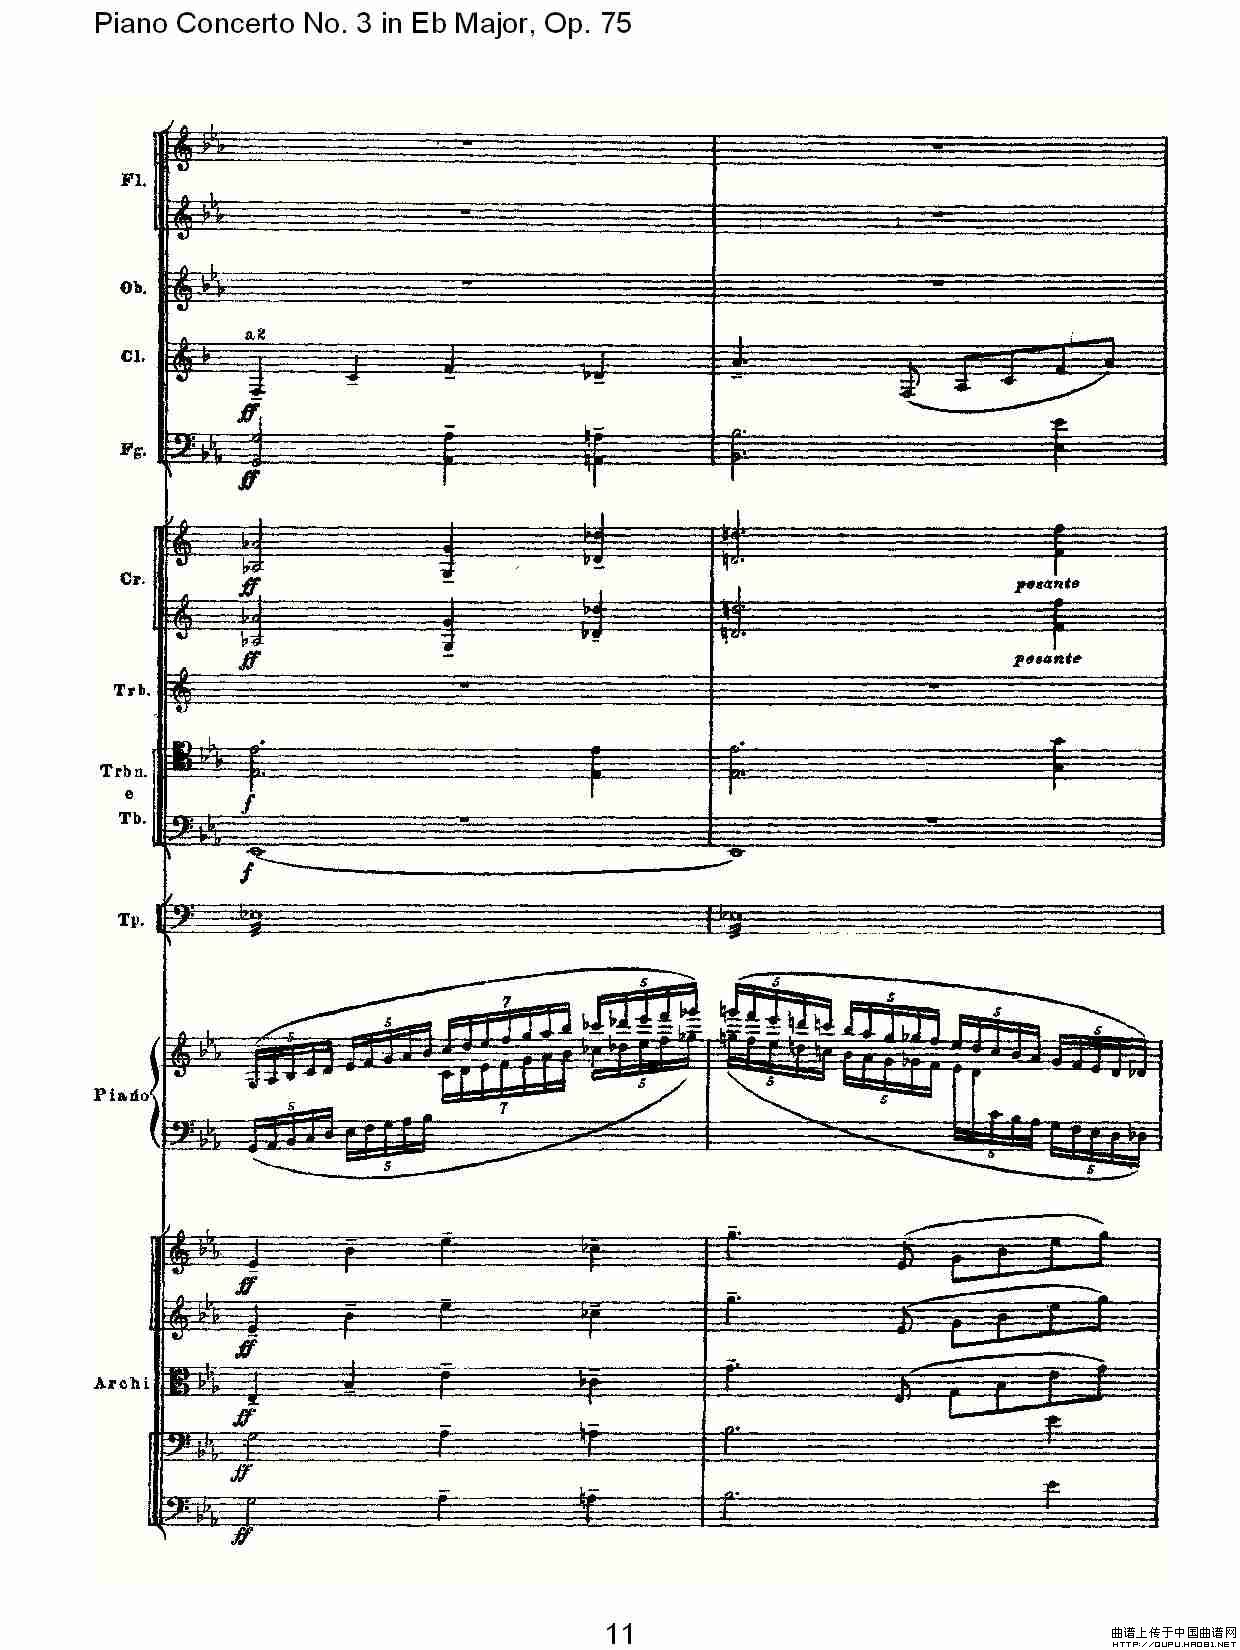 Piano Concerto No.3 in Eb Major,Op.75（Eb大调第三钢琴协奏曲）(1)_原文件名：Piano Concerto No.3 in Eb Major,Op.7511.jpg